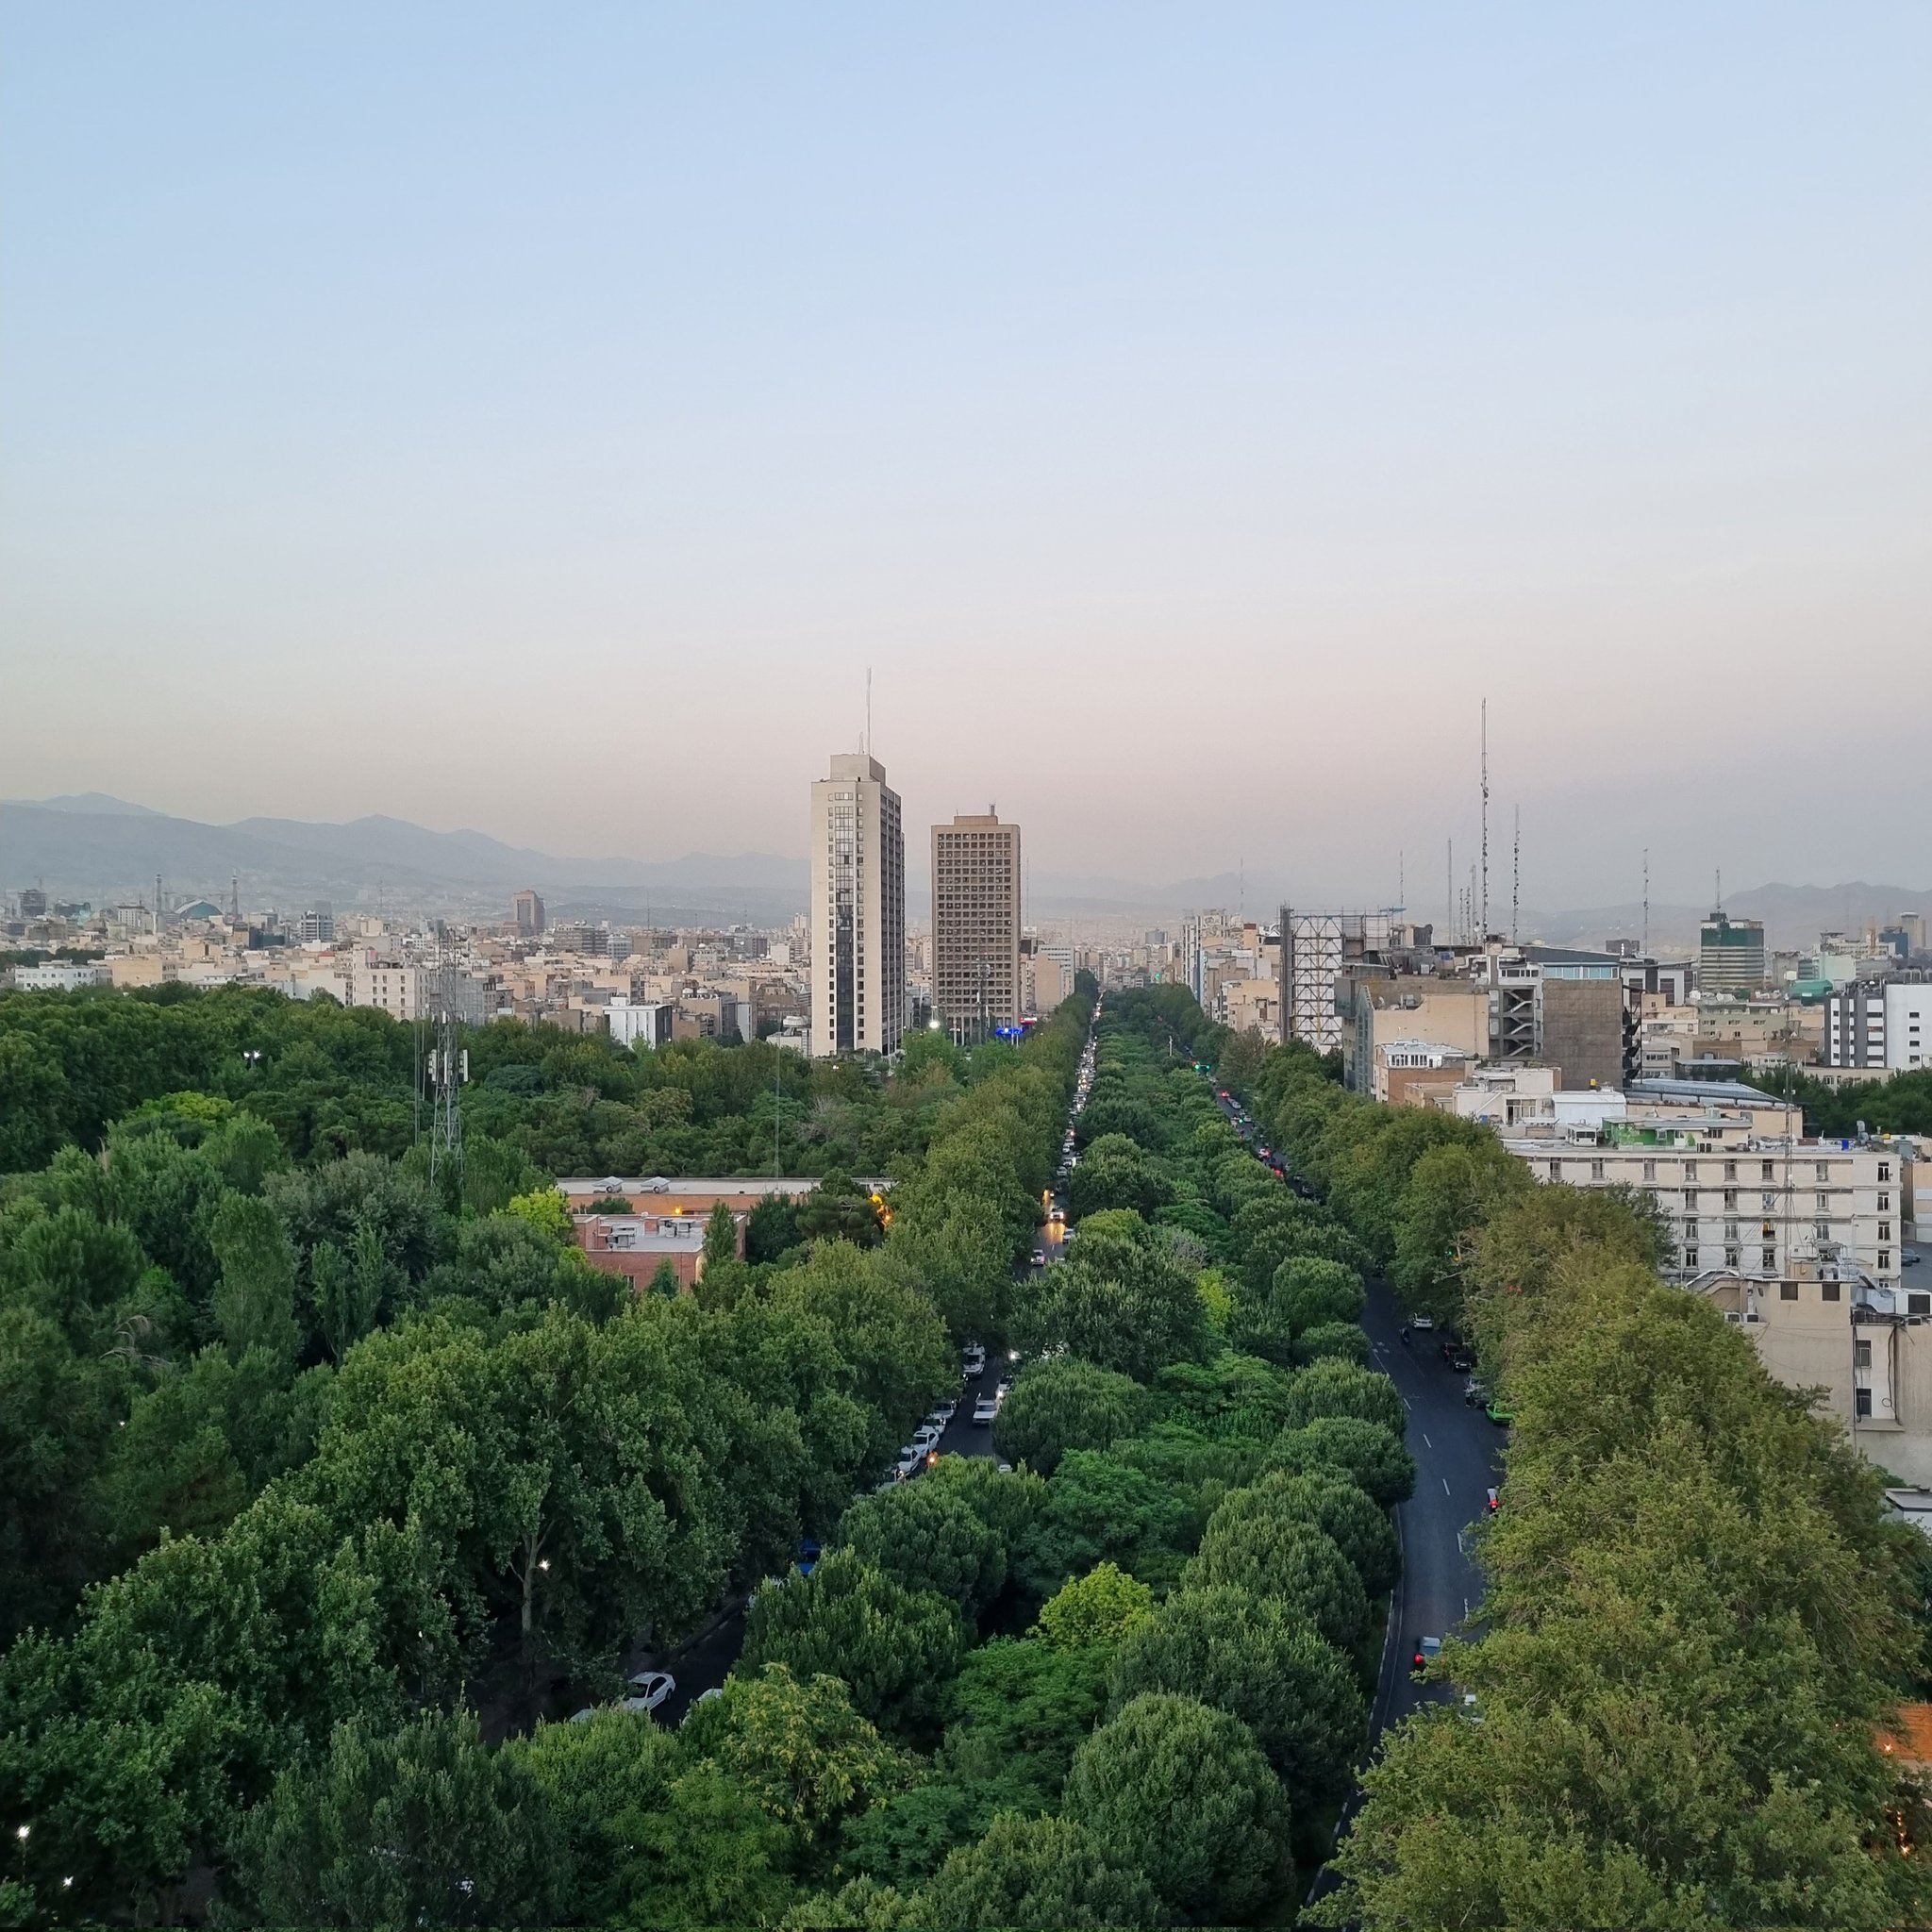  ۴ عکس فوق‌العاده زیبا که از یک خیابان در تهران ثبت شد + عکس